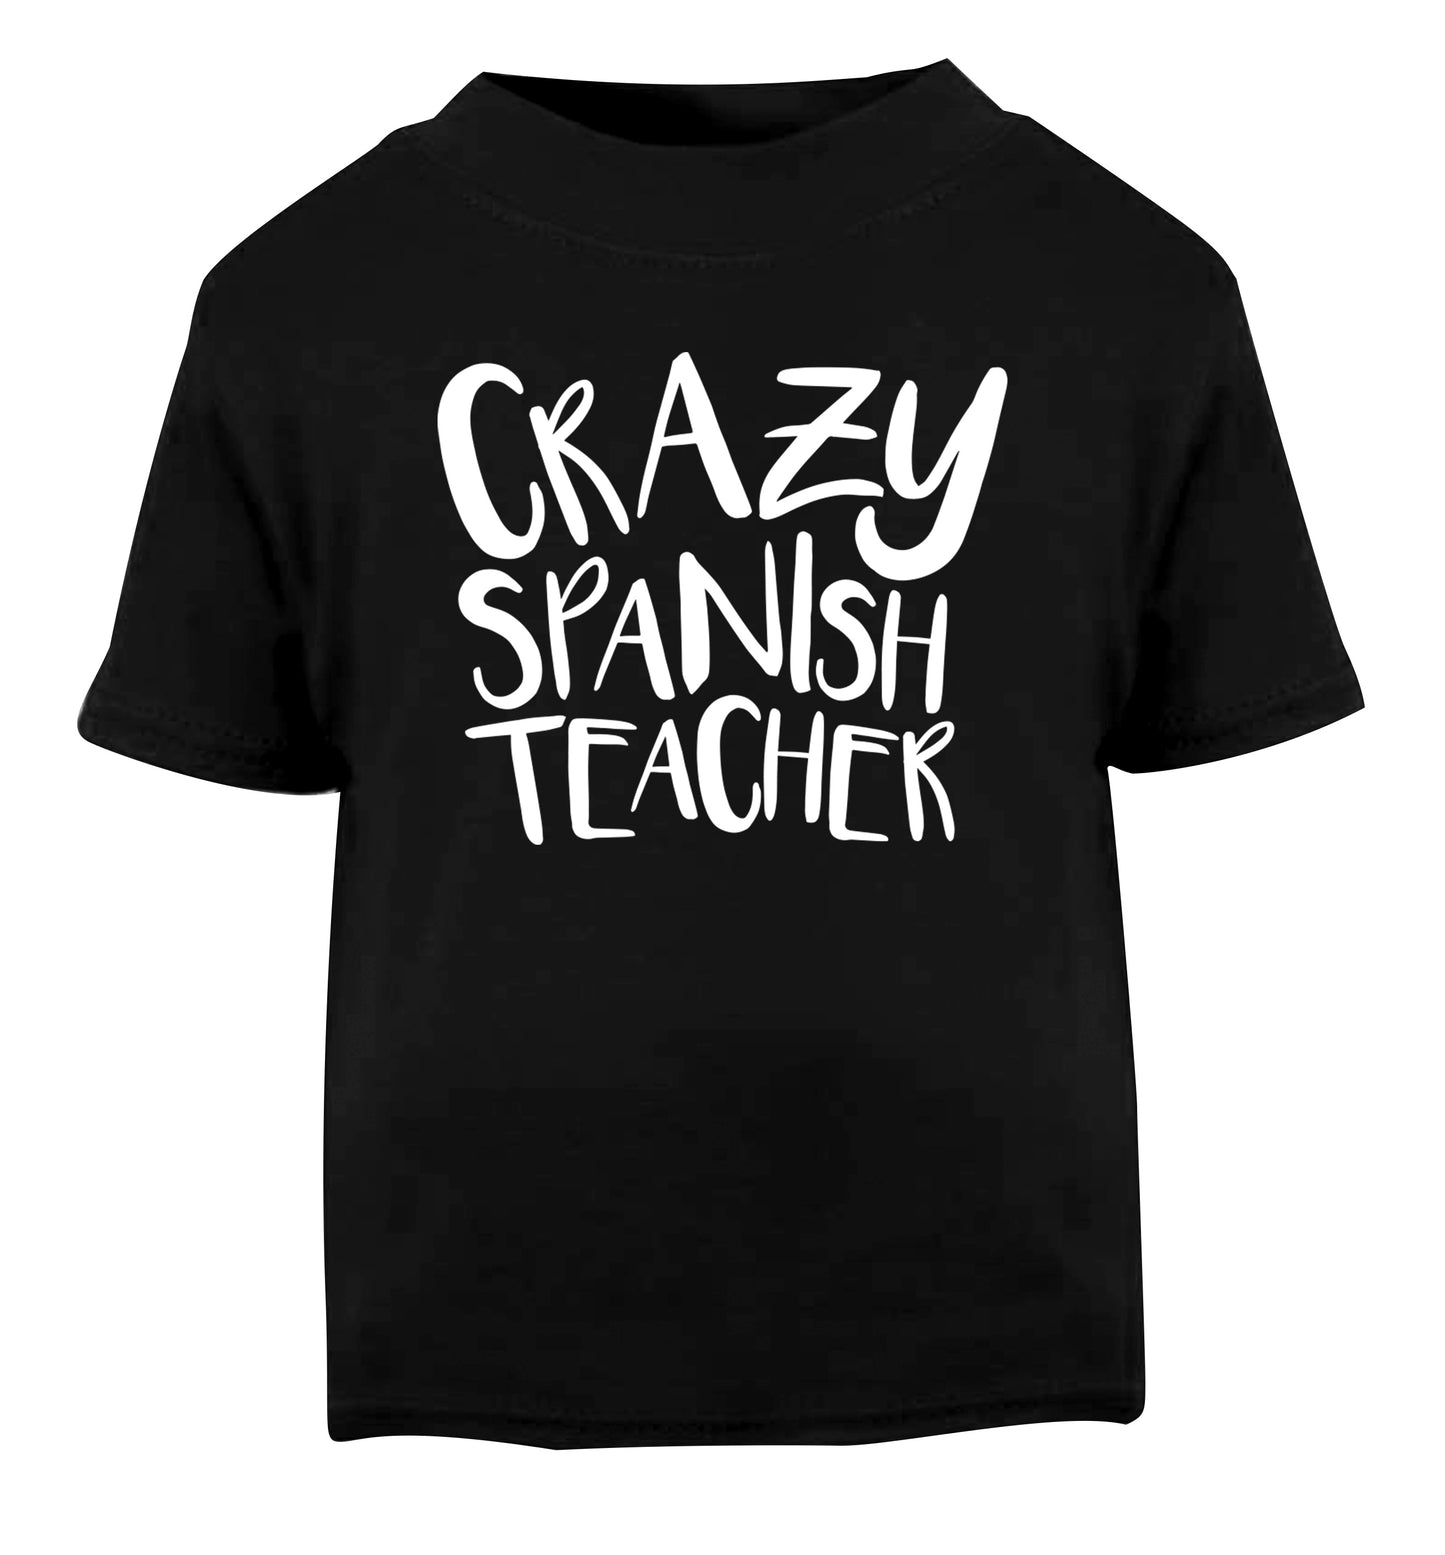 Crazy spanish teacher Black Baby Toddler Tshirt 2 years